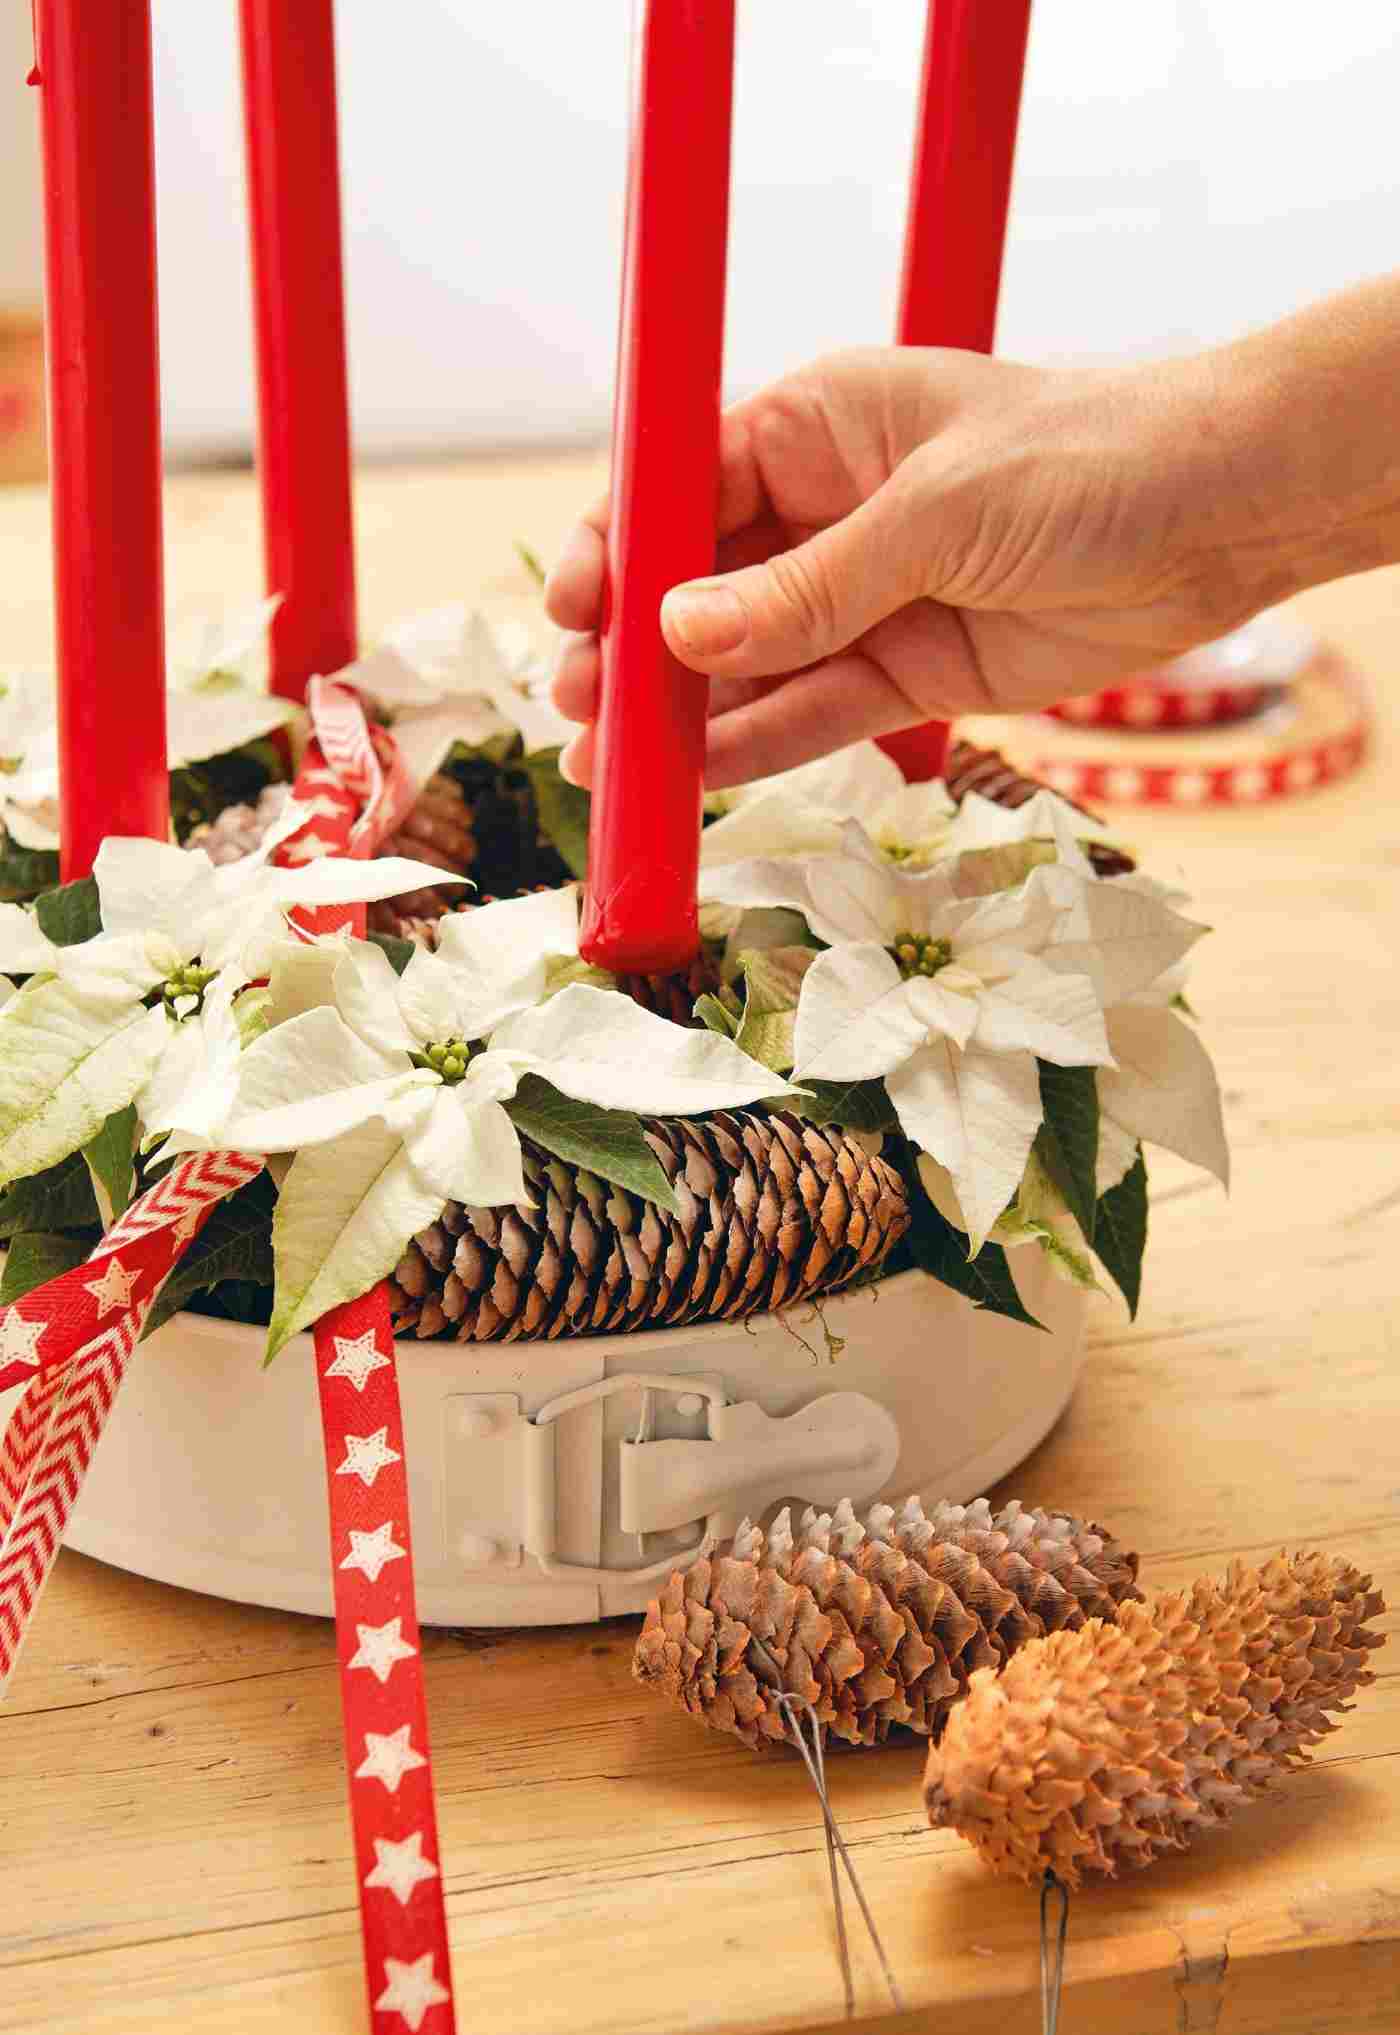 Idee für den Adventskranz mit weißen Weihnachtssternen und roten Kerzen